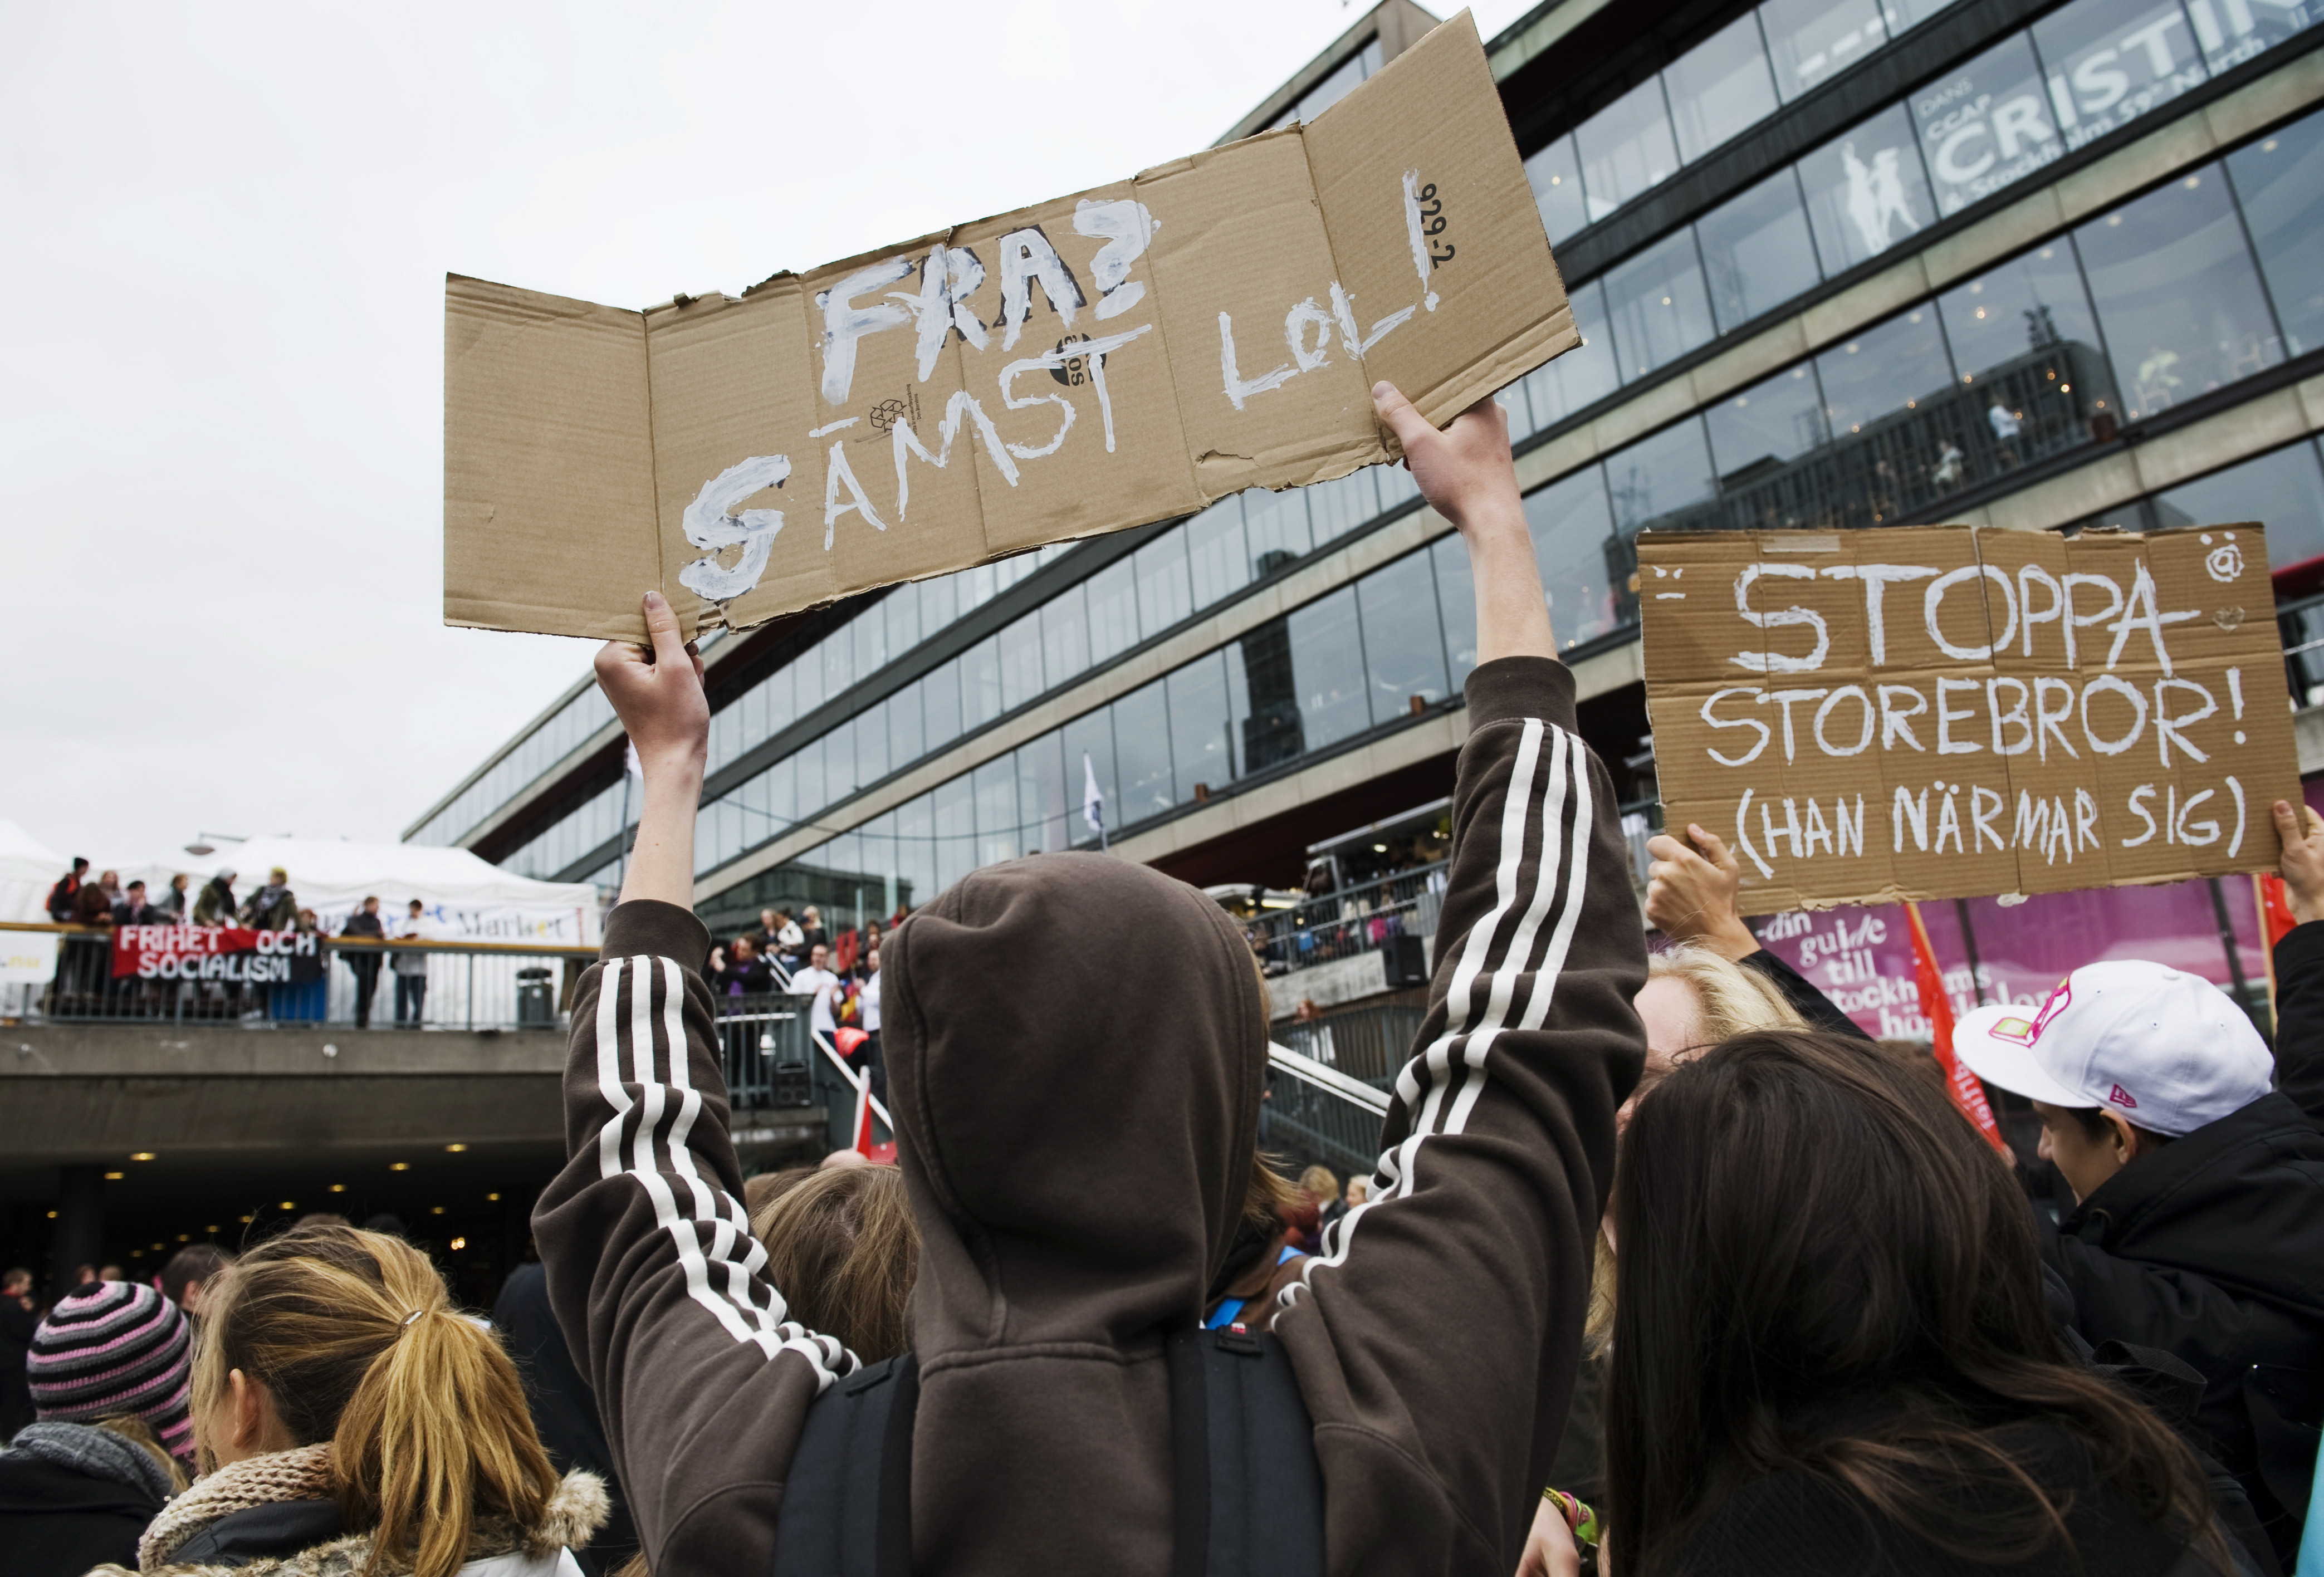 FRA-debatten lyckades samla många i Stockholm och i resten av Sverige för att demonstrera. Det återstår att se om protesterna mot Acta får samma genomslag.